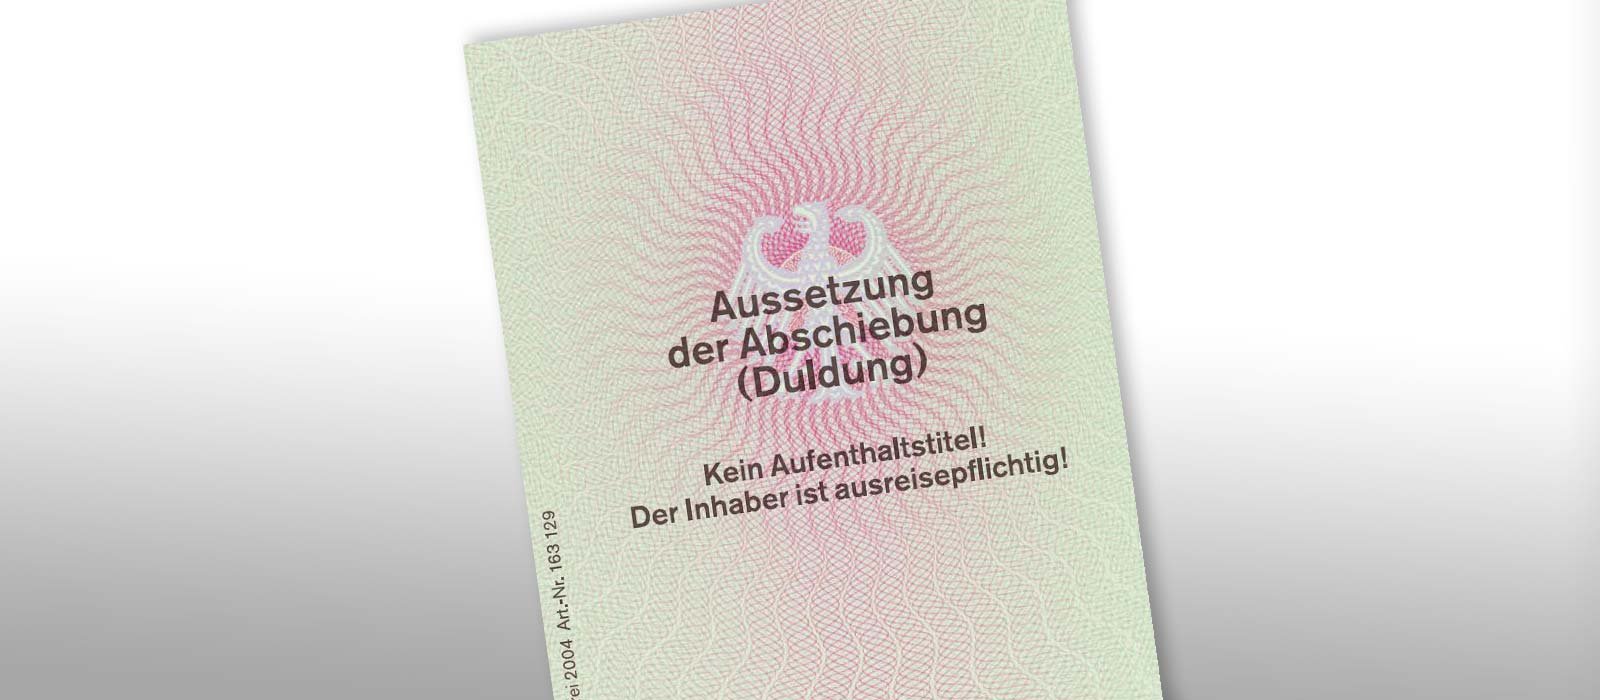 Ausbildungsduldung in Deutschland (c) Bundesgesetzblatt 2004, I S. 2973/2974 Duldung (Trägervordruck) für Ausländer in Deutschland